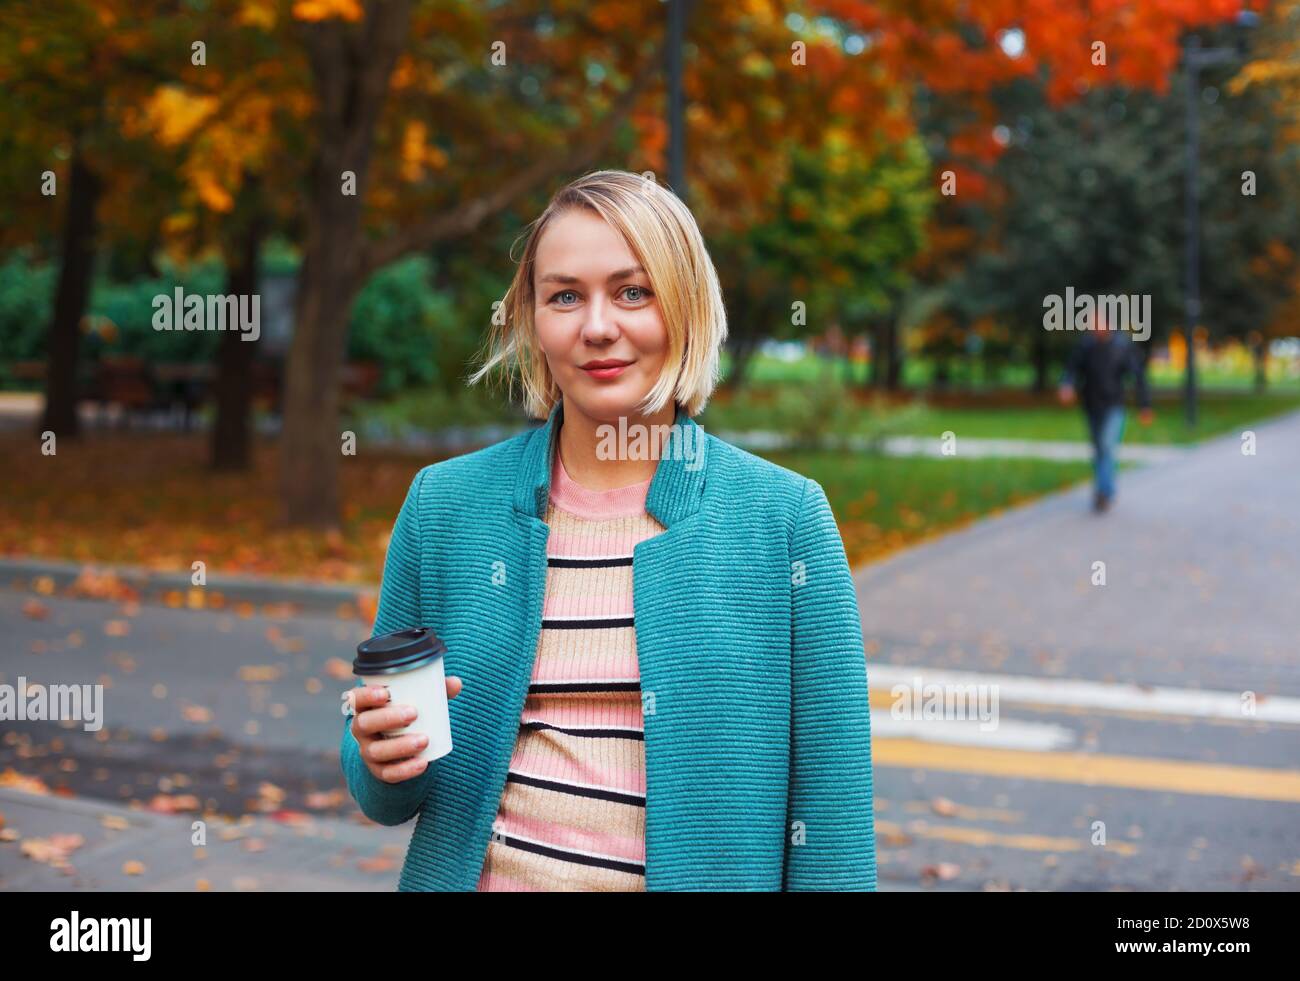 Lächelnde blonde kaukasische Frau mit Take Away Kaffeetasse zu Fuß im Herbst Park. Attraktive Frau, die auf einer Kreuzung steht Stockfoto